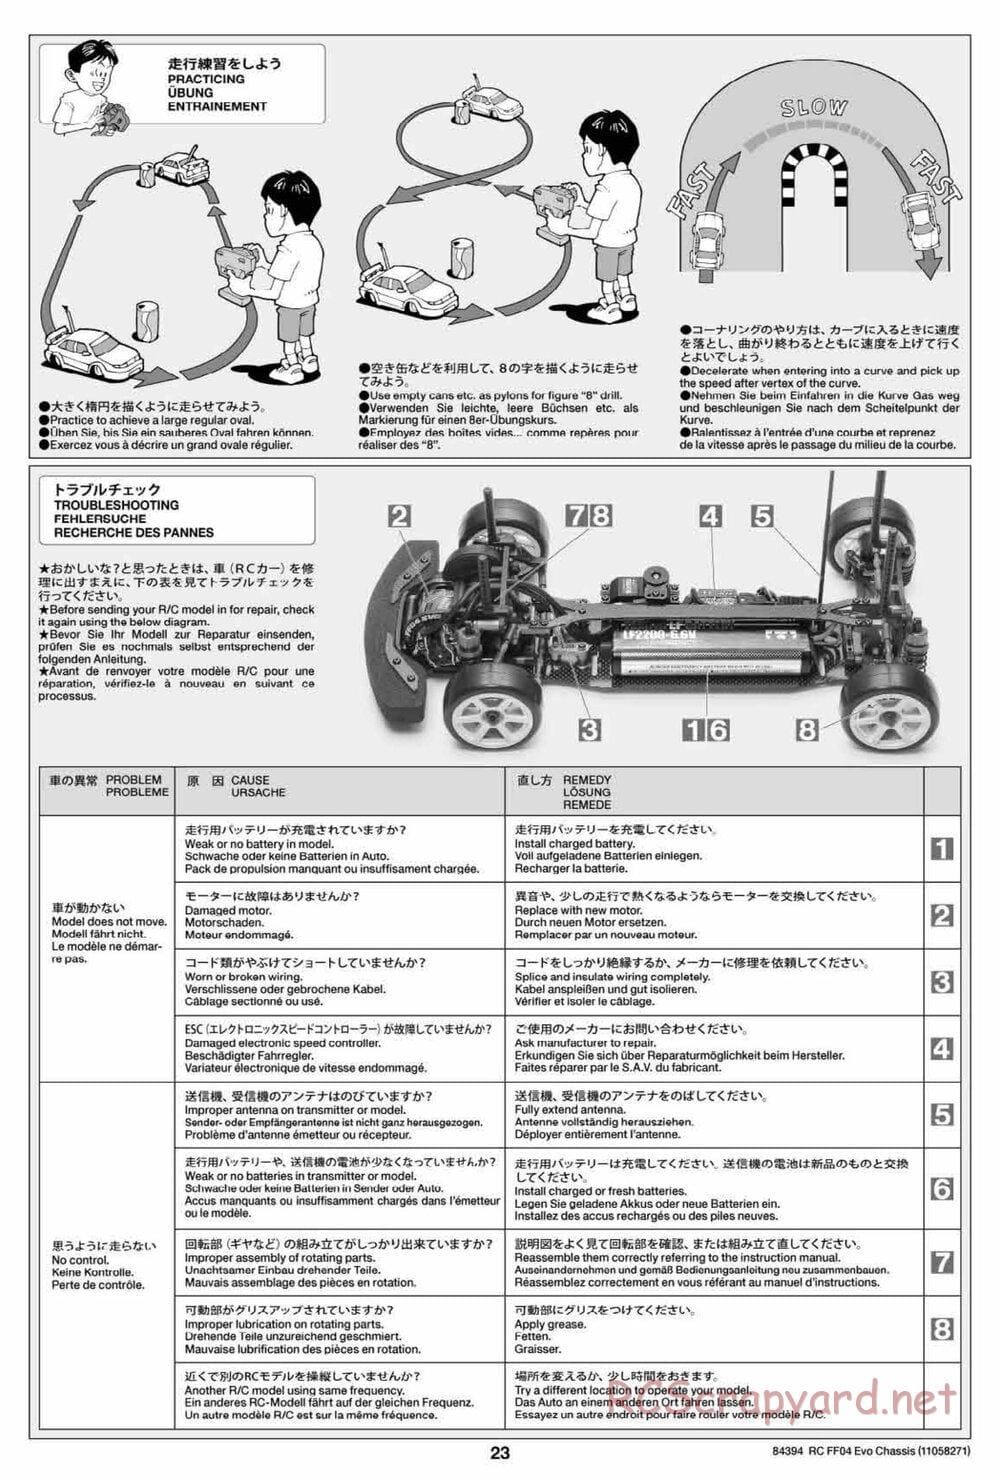 Tamiya - FF-04 Evo Chassis - Manual - Page 23